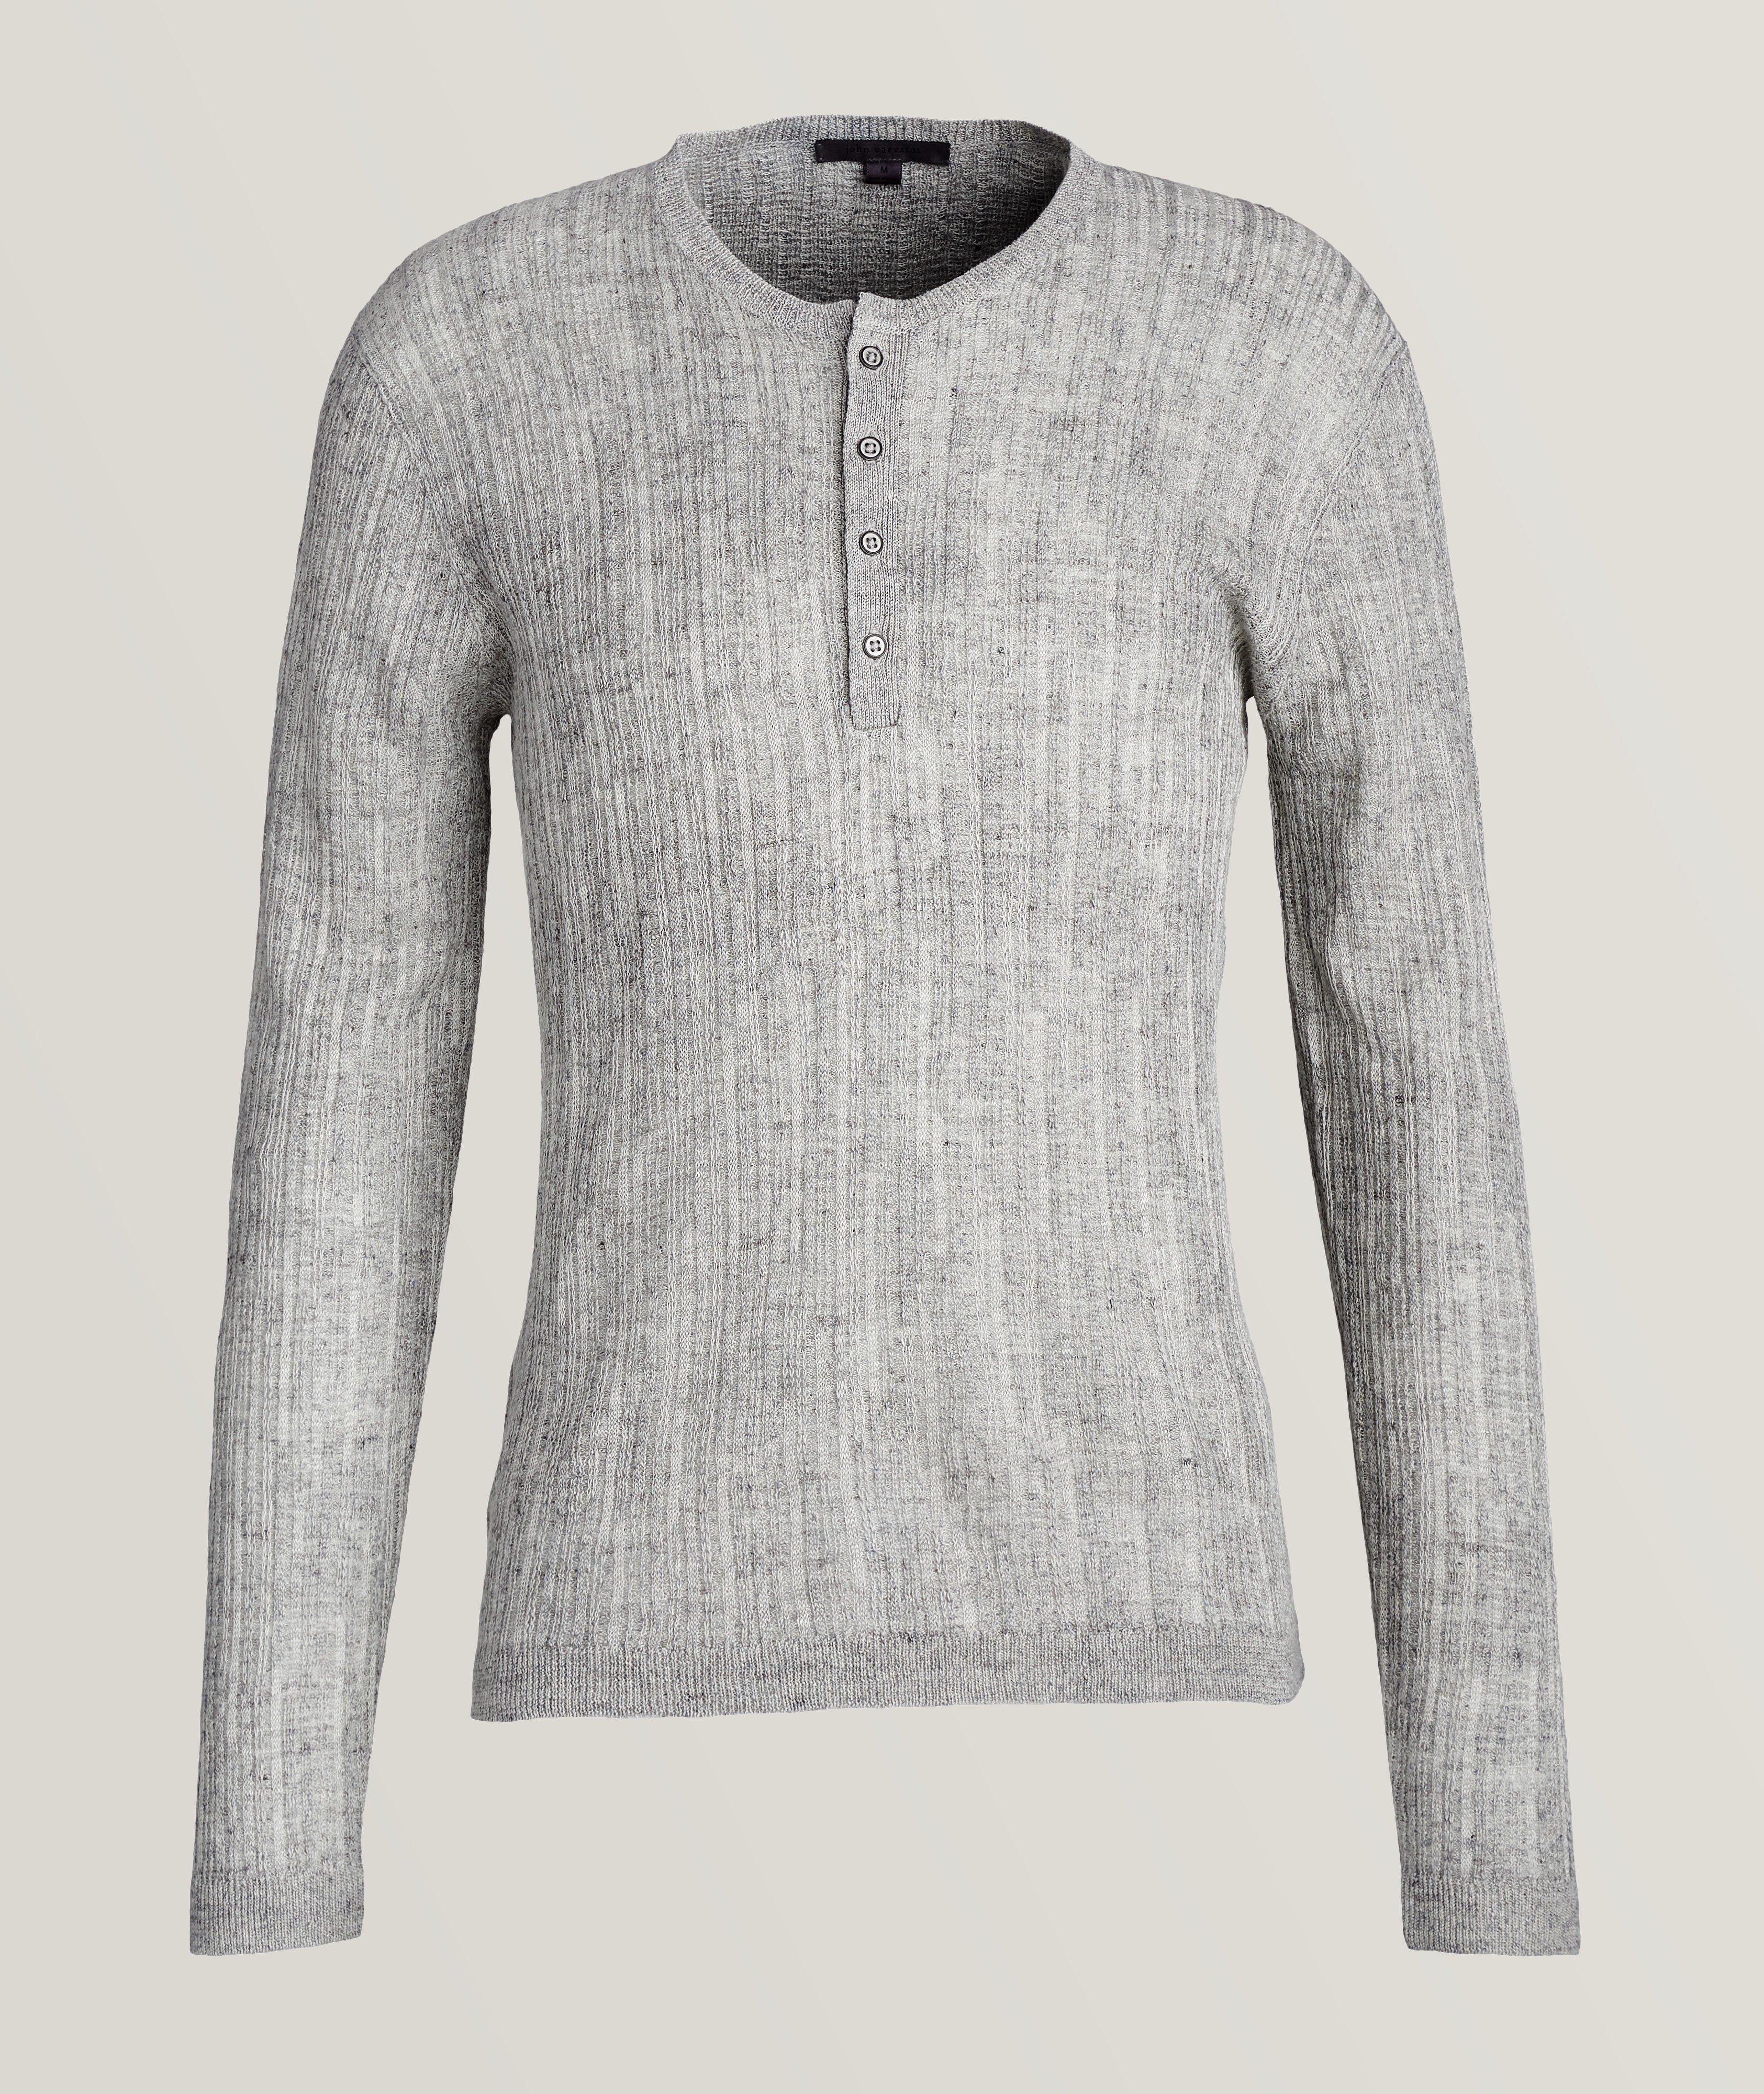 Pull boutonné en tricot texturé image 0